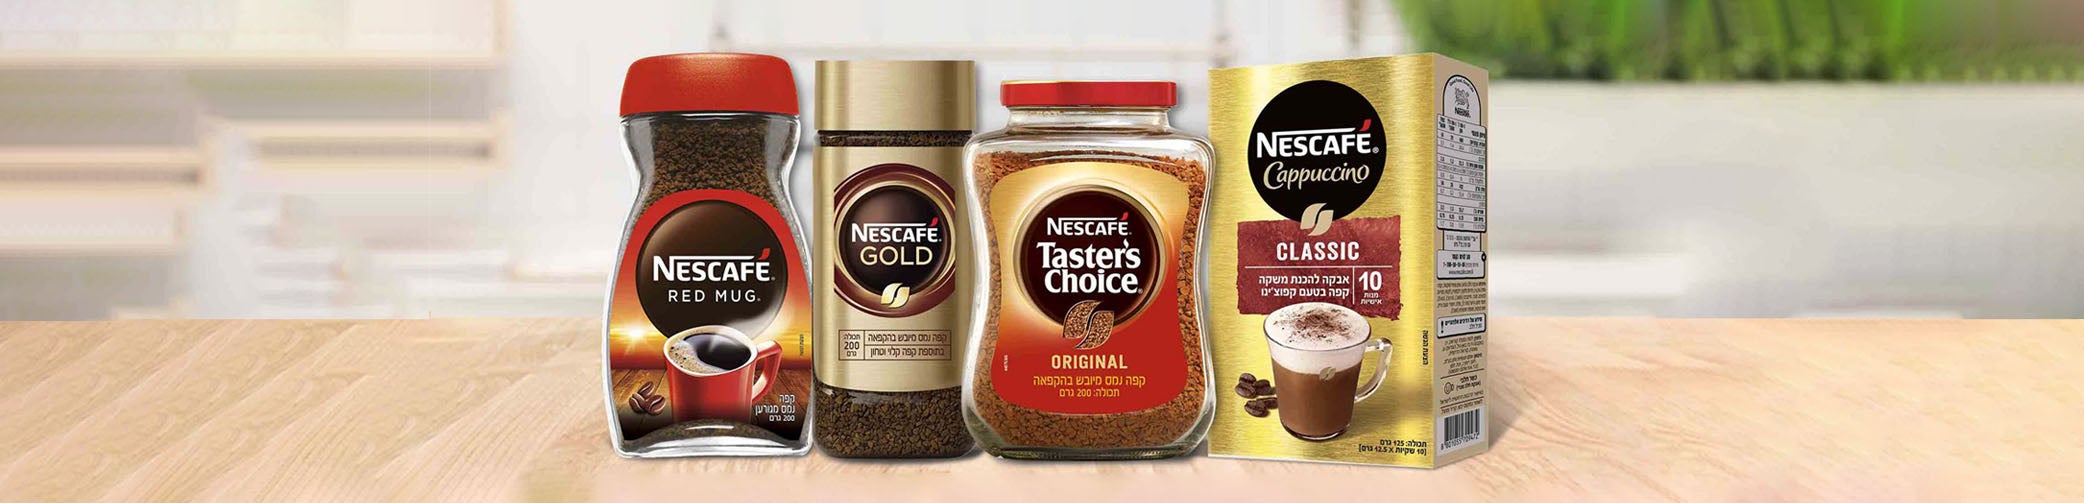 מגוון מוצרי Nescafe